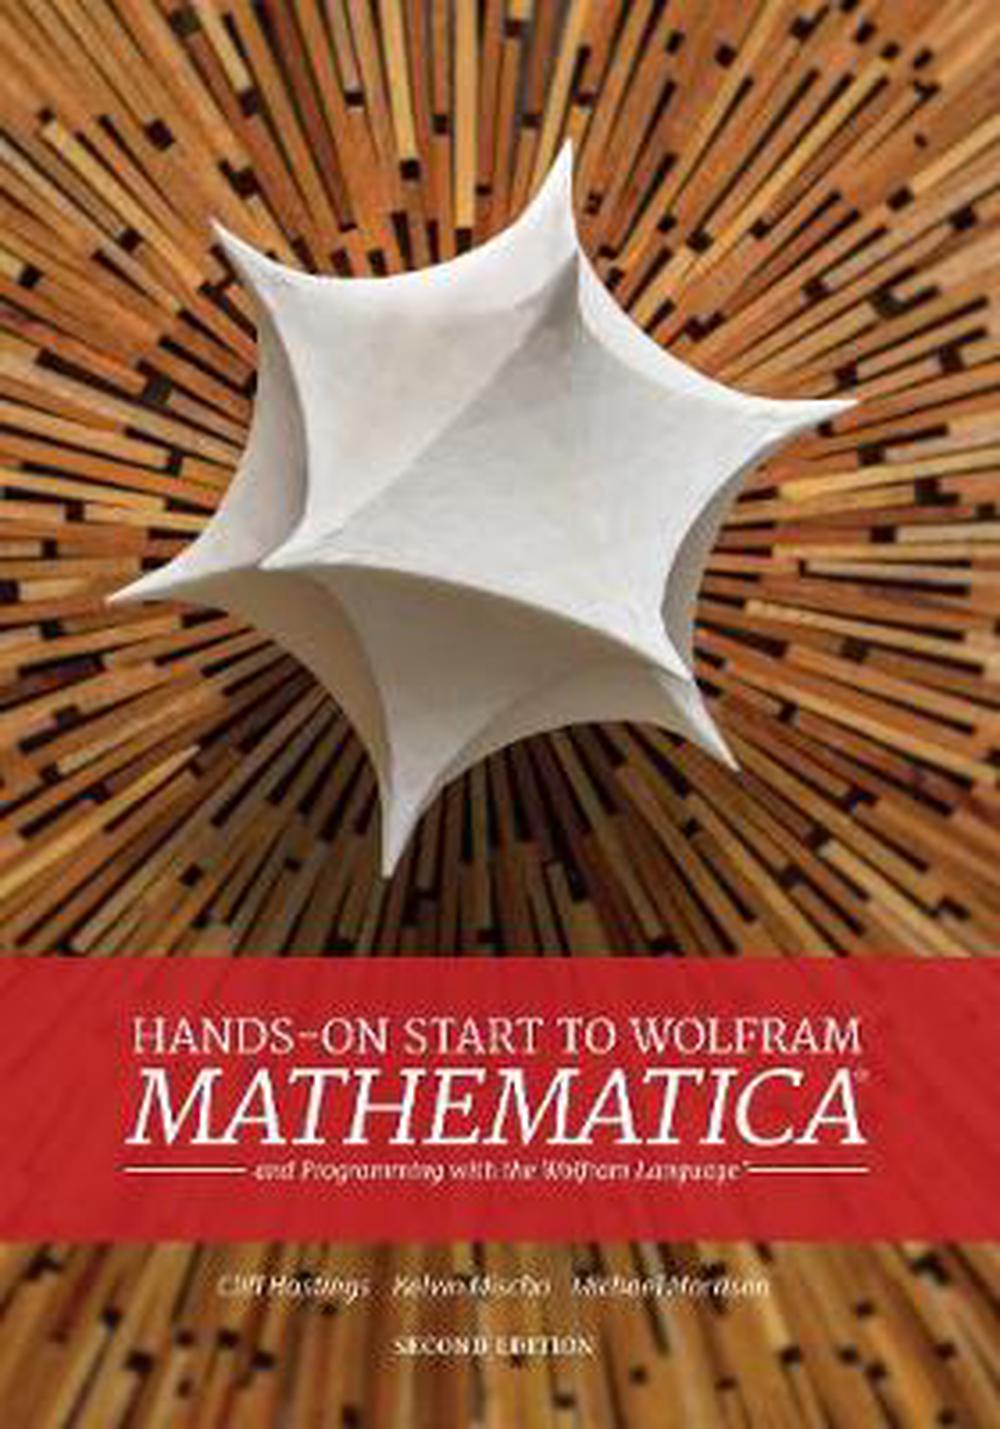 wolfram mathematica 10.3 download